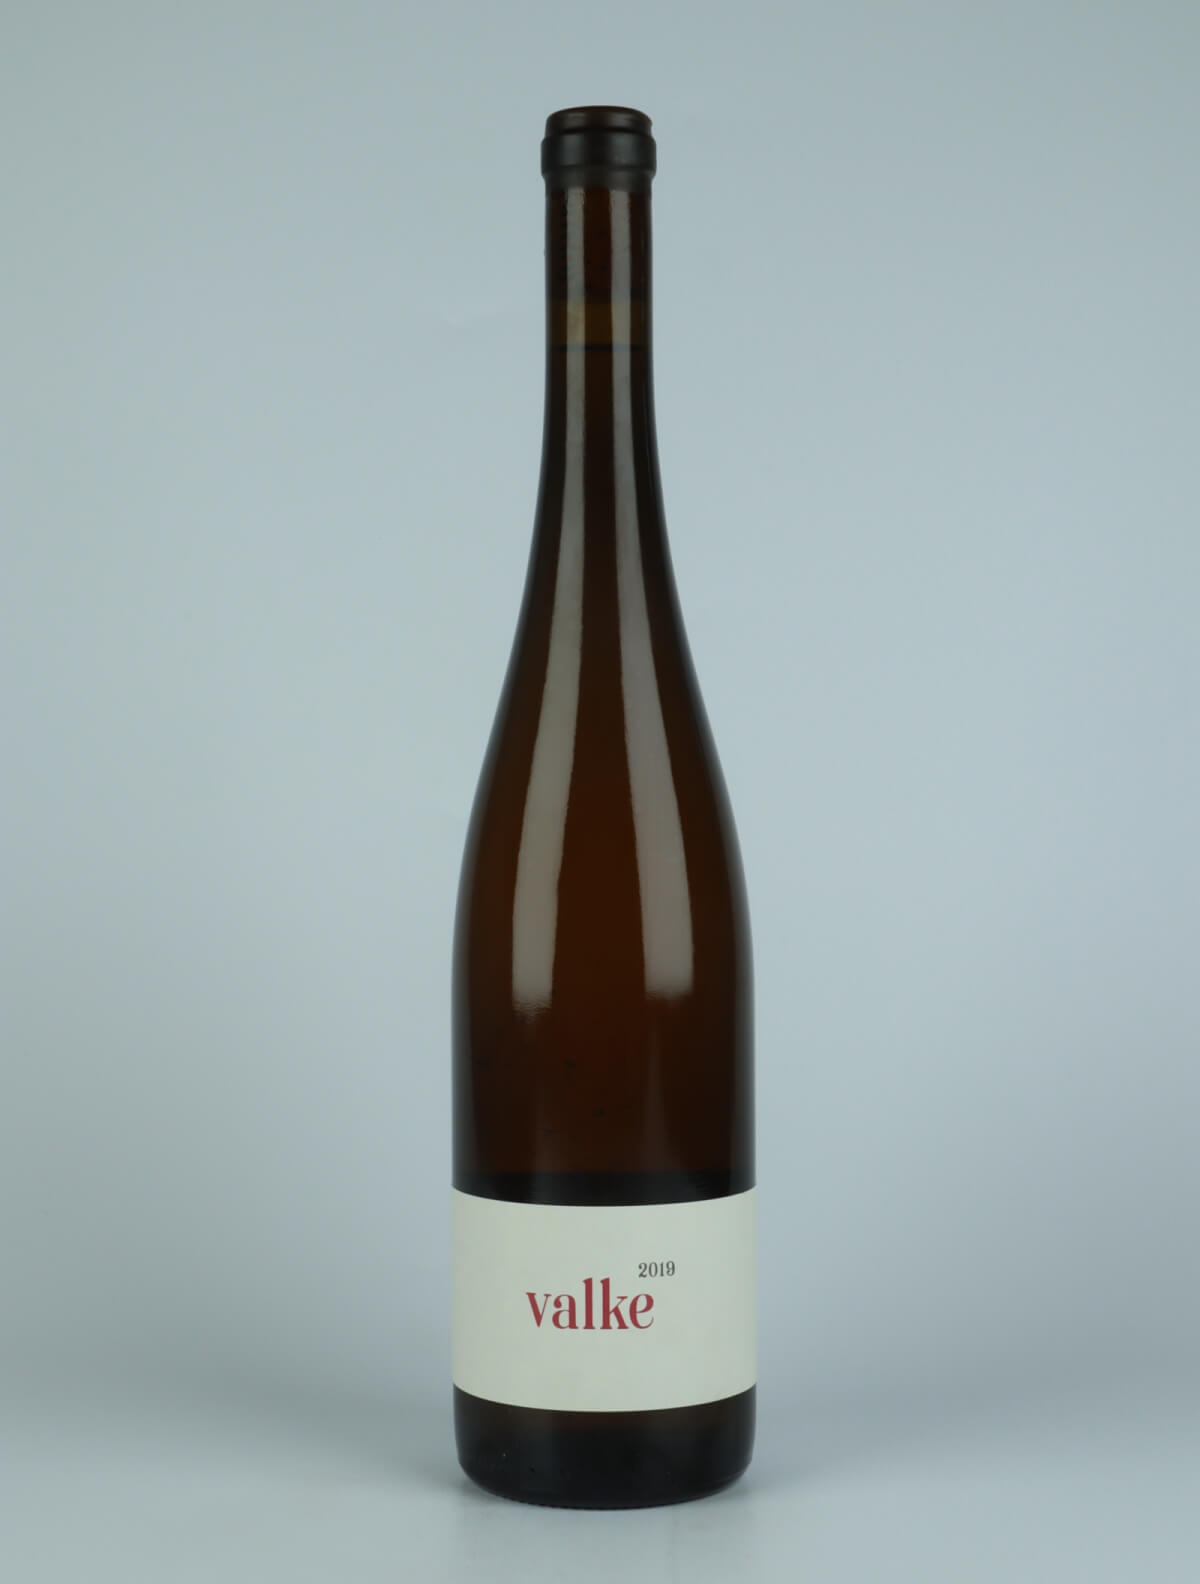 En flaske 2019 Valke Hvidvin fra Jakob Tennstedt, Mosel i Tyskland